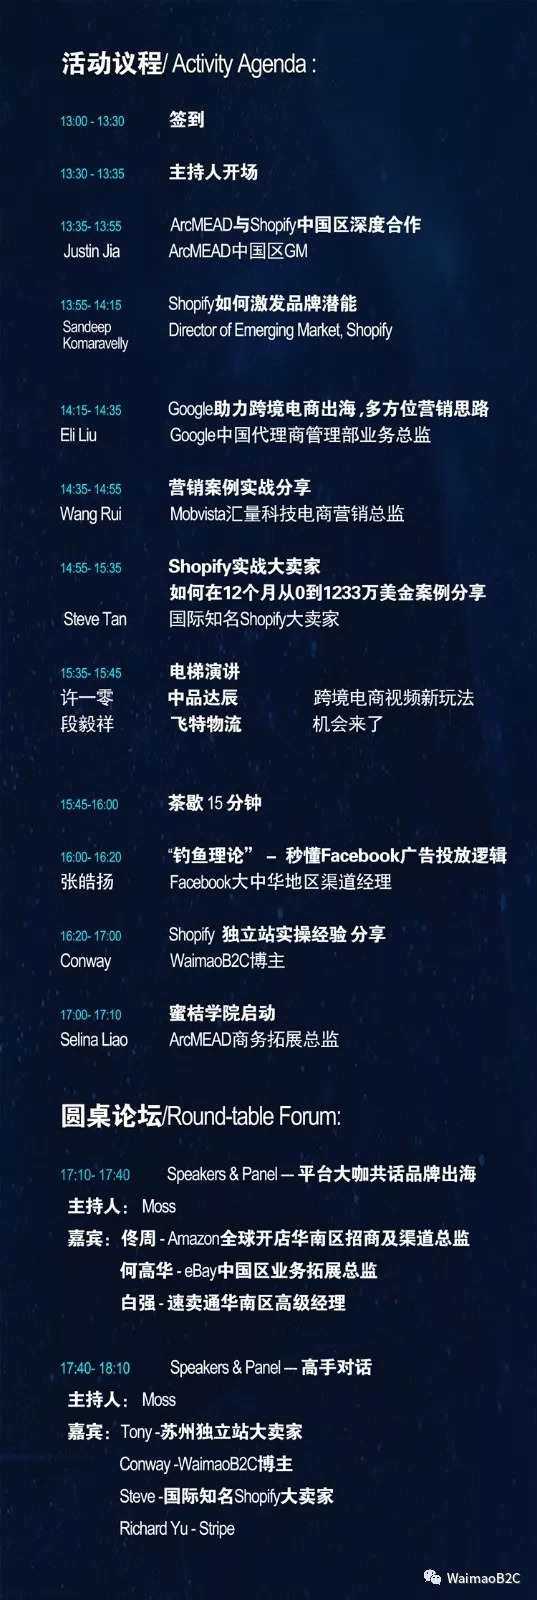 9月14日 Shopify主题论坛深圳站 - 我们不见不散